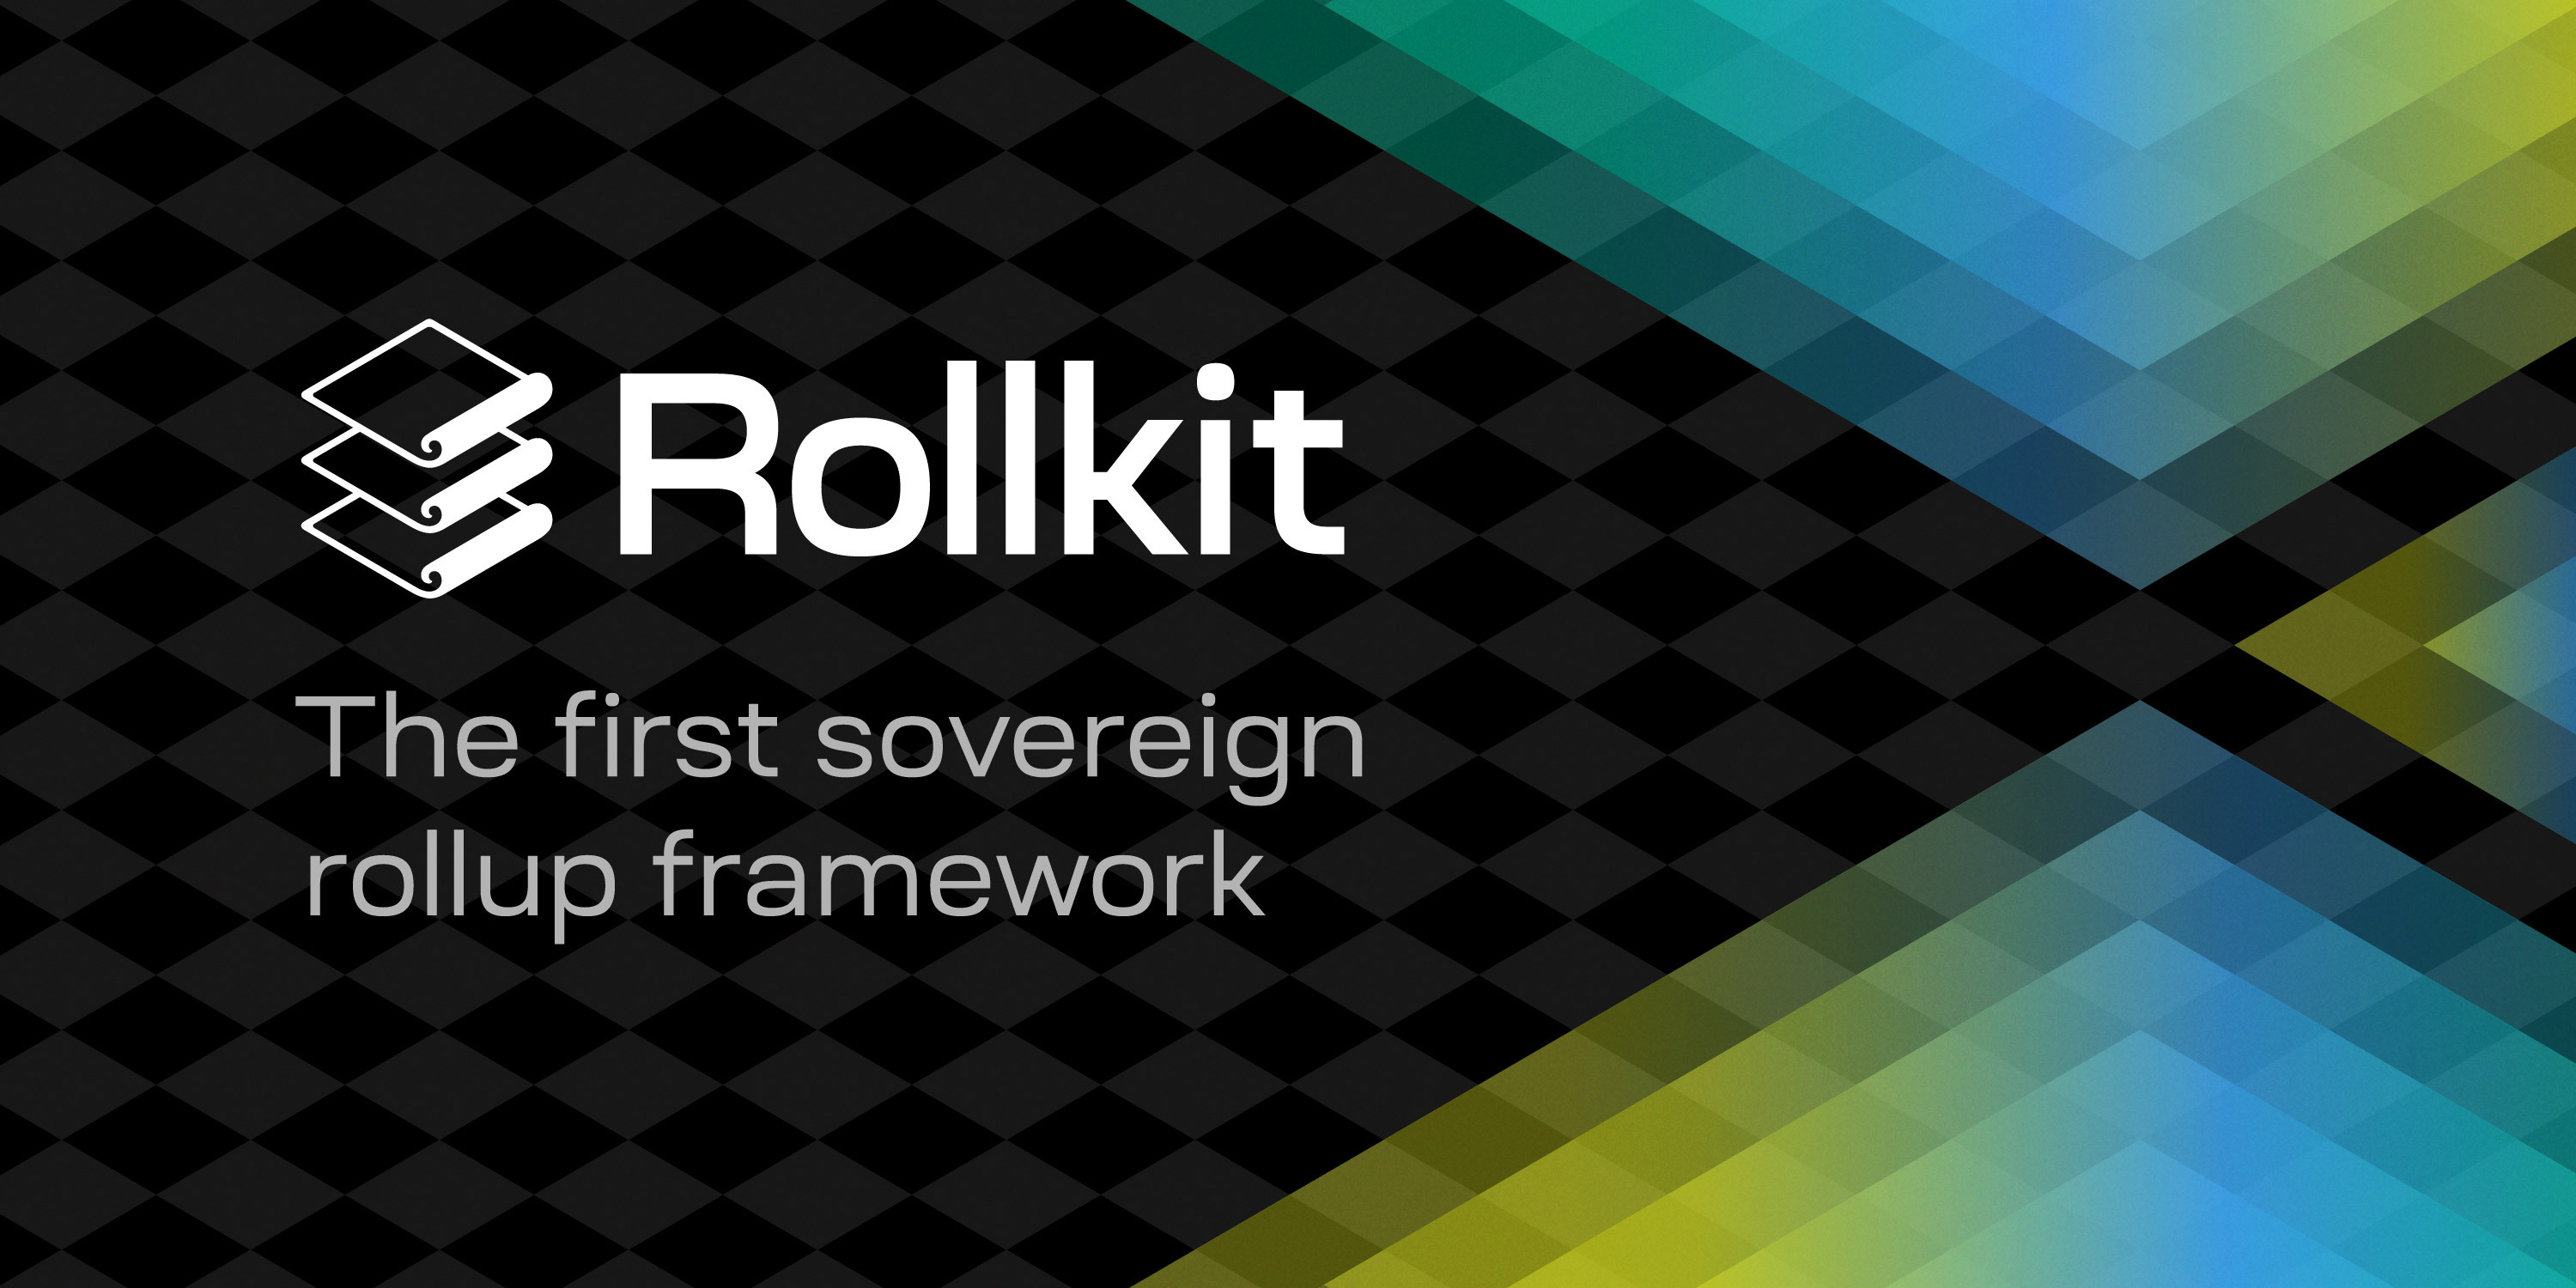 Rollkit blog cover